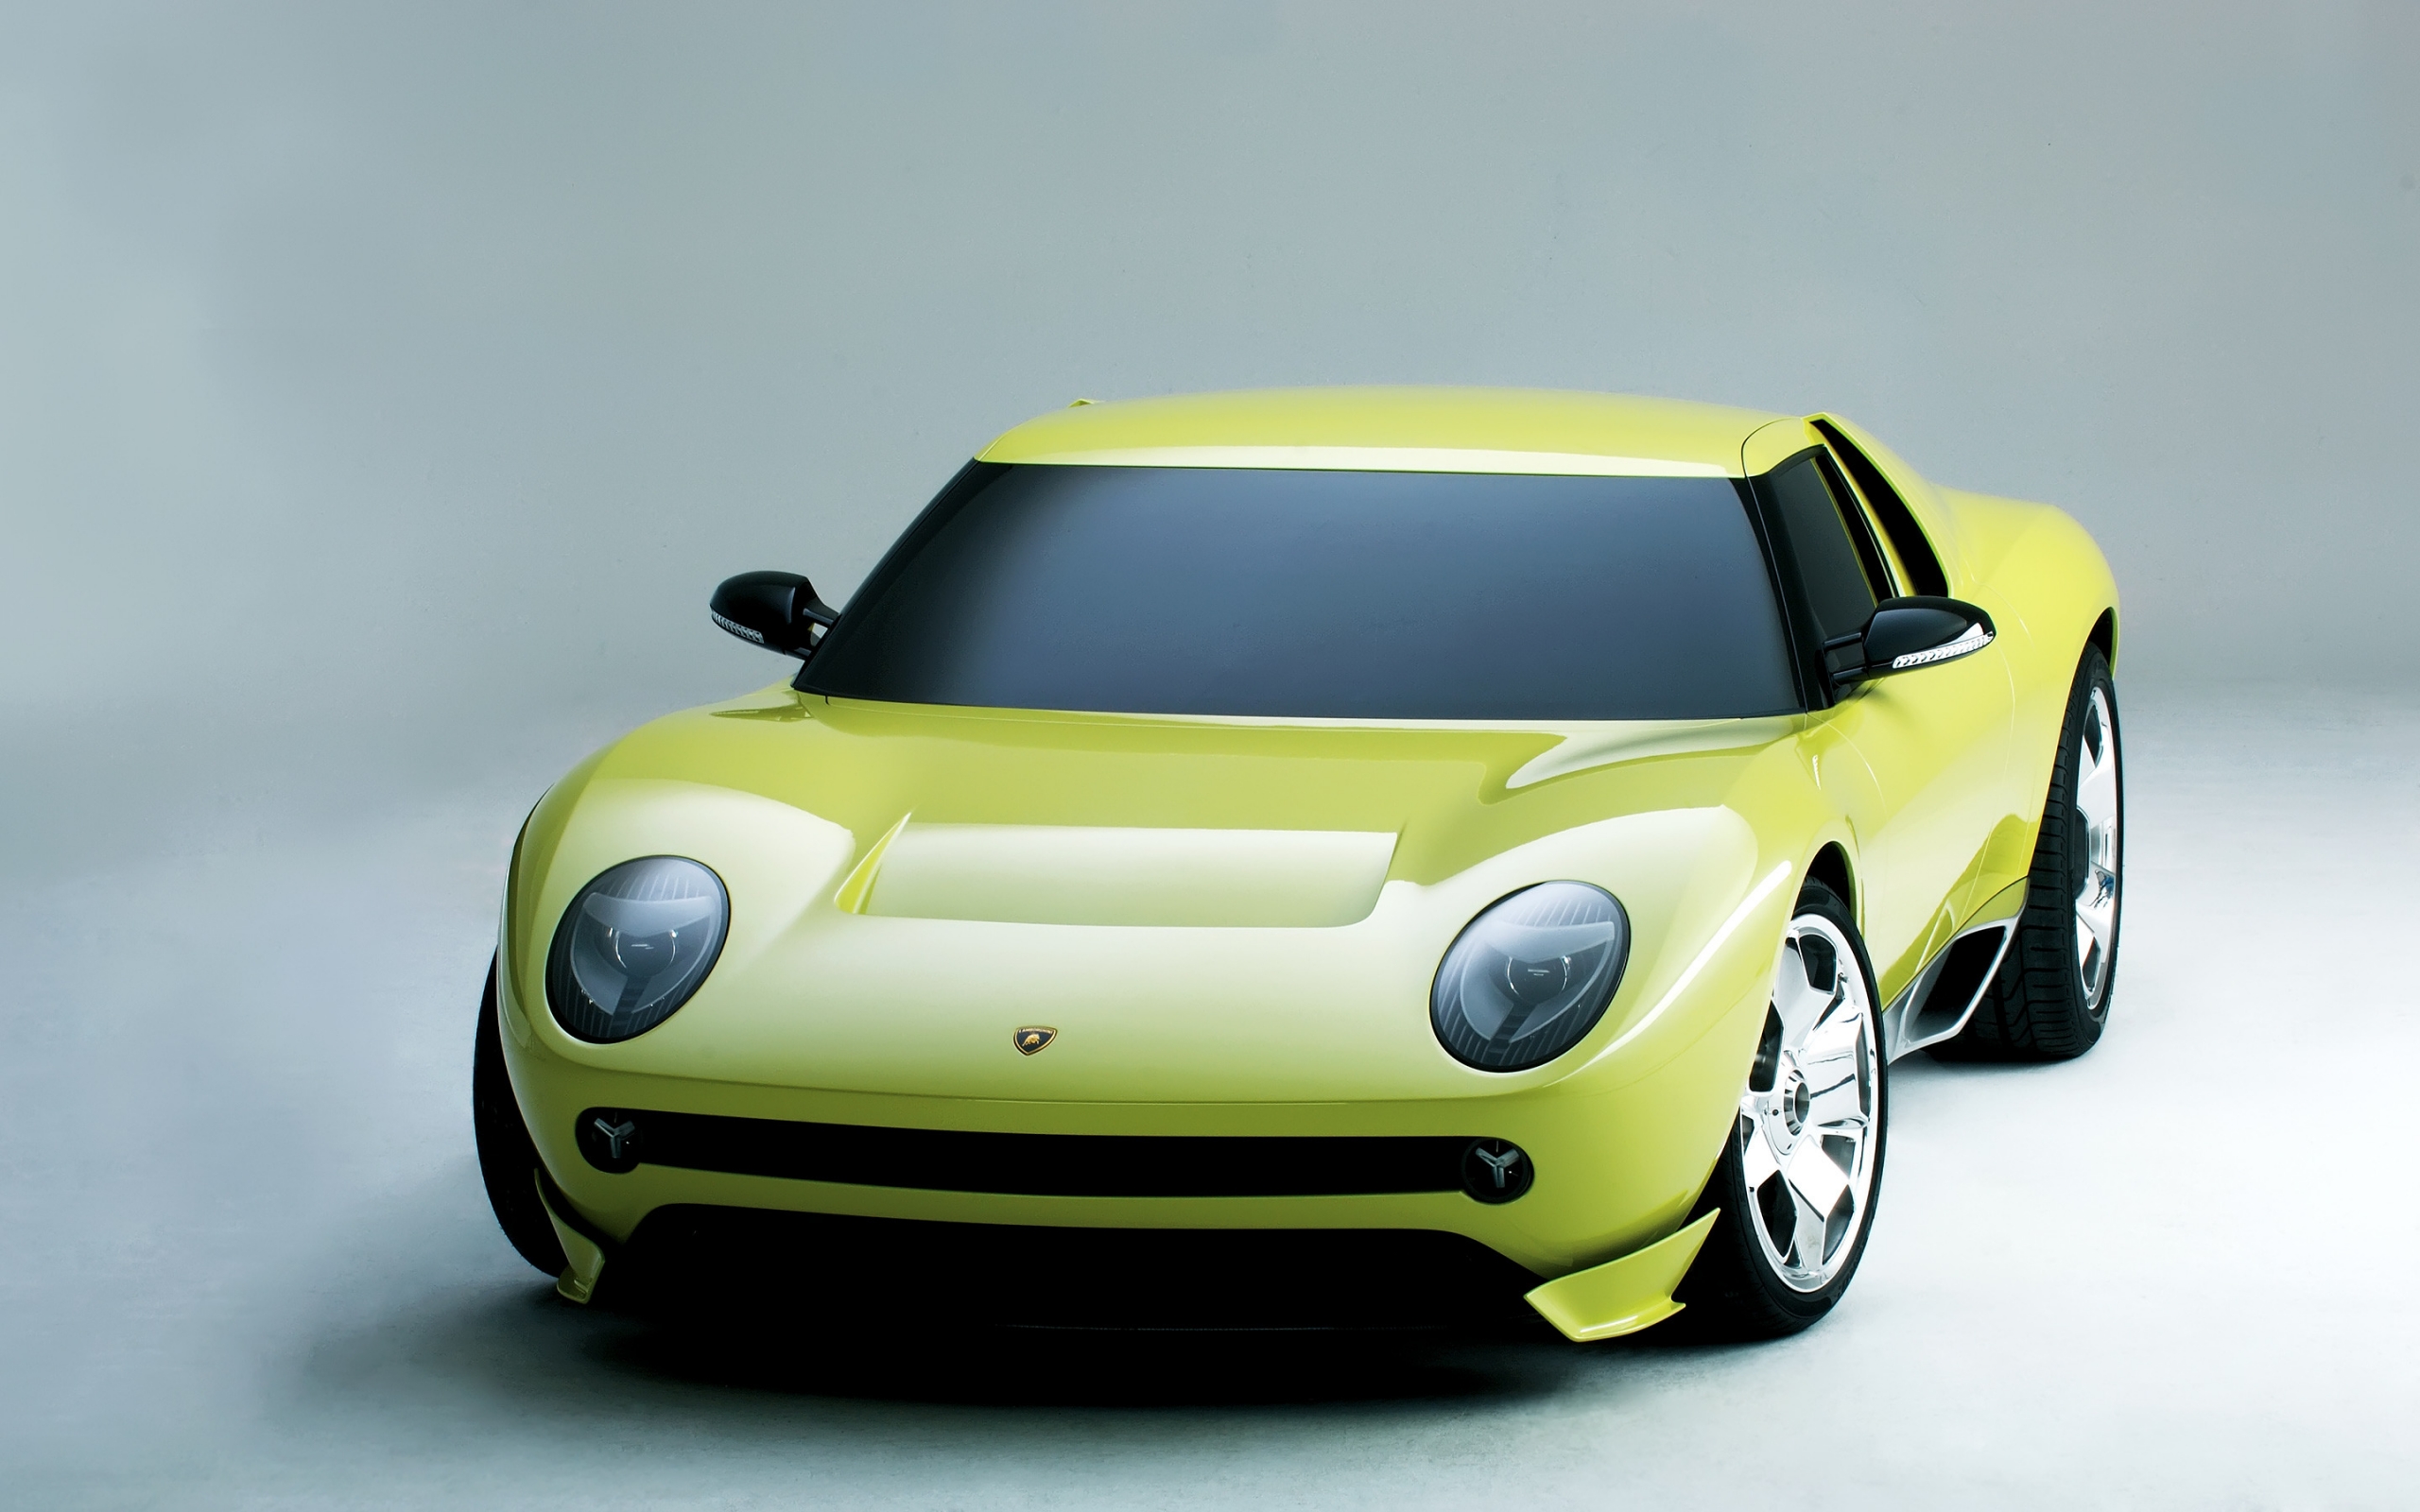 Lamborghini Miura Concept for 2560 x 1600 widescreen resolution